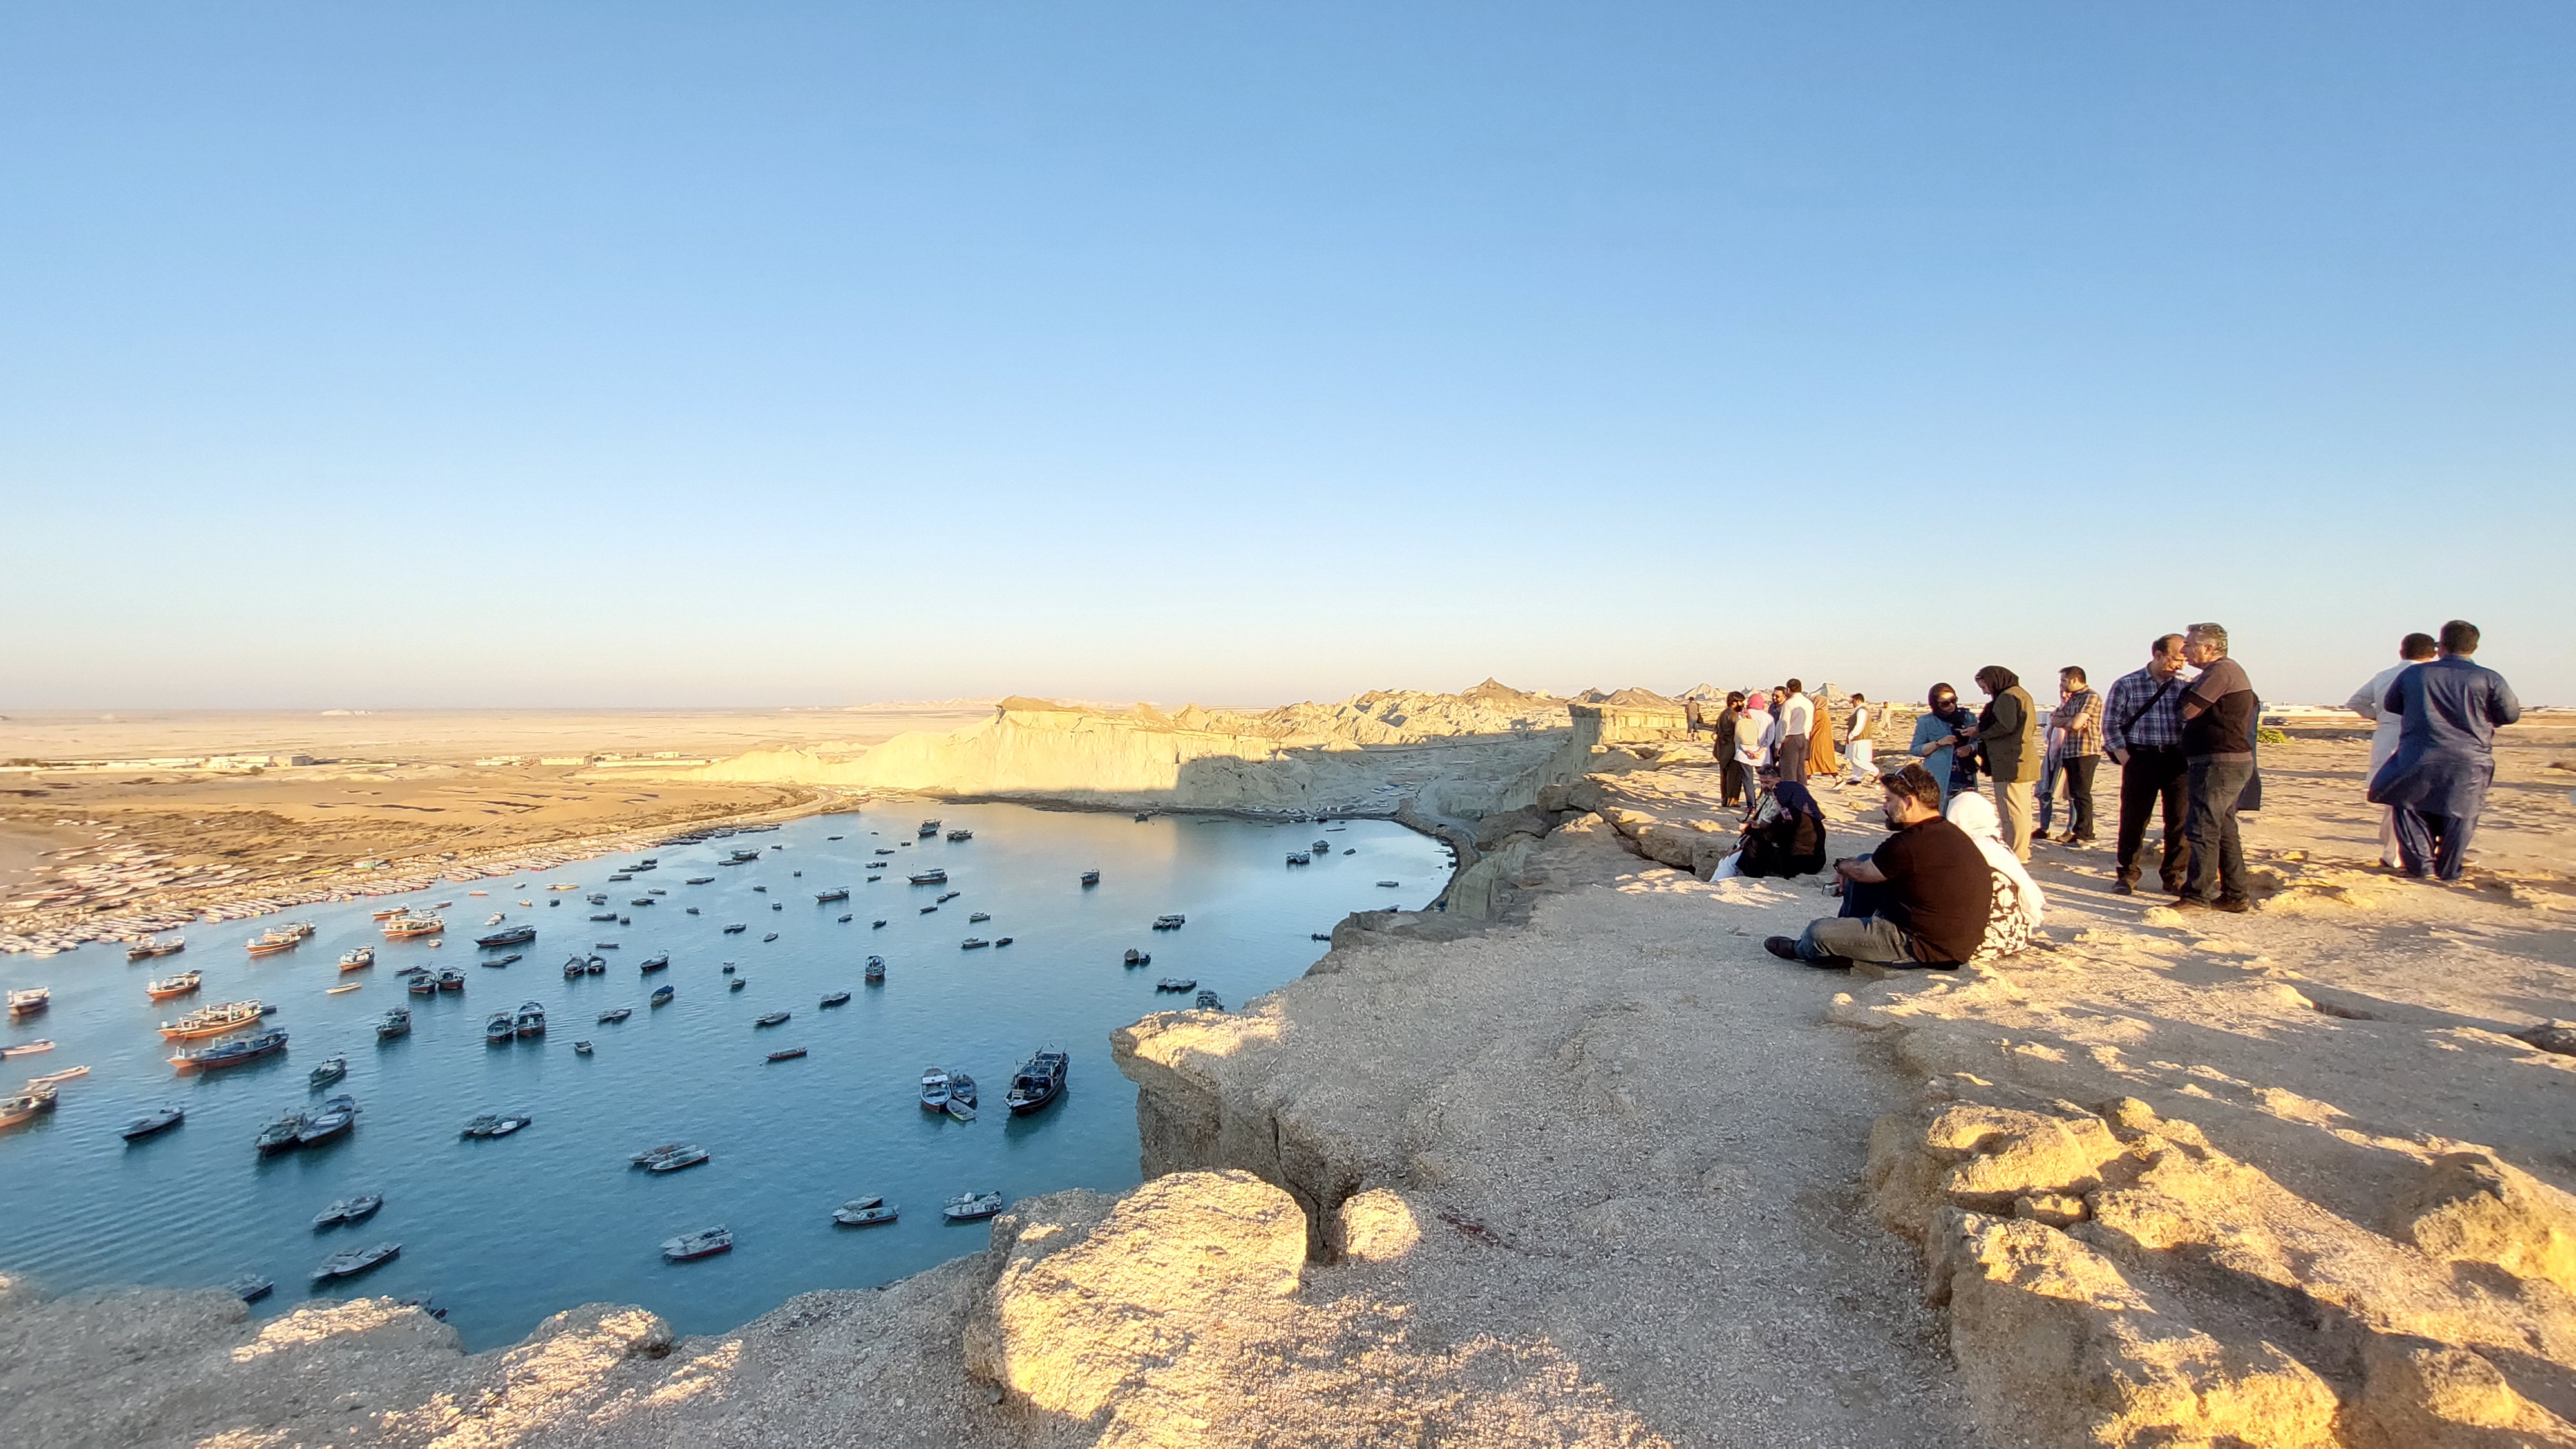 اختصاص رتبه پنجم گردشگری کشور به سواحل سیستان و بلوچستان/ پیش بینی ورود یک میلیون نفر گردشگر به سواحل دریای عمان در ایام نوروز